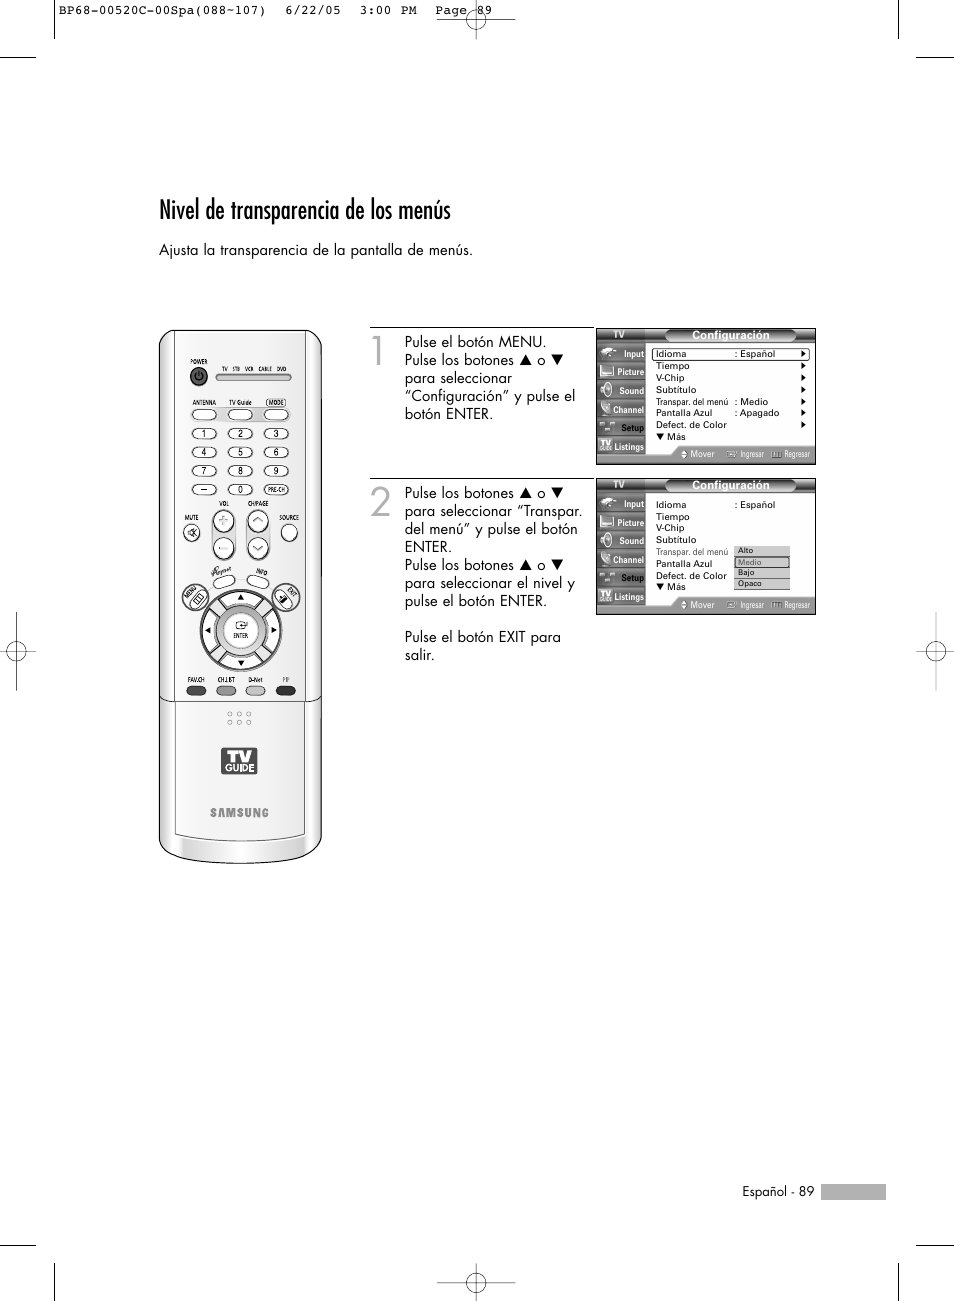 Nivel de transparencia de los menús | Samsung ESPAOL - 2 HL-R6768W Manual del usuario | Página 89 / 144